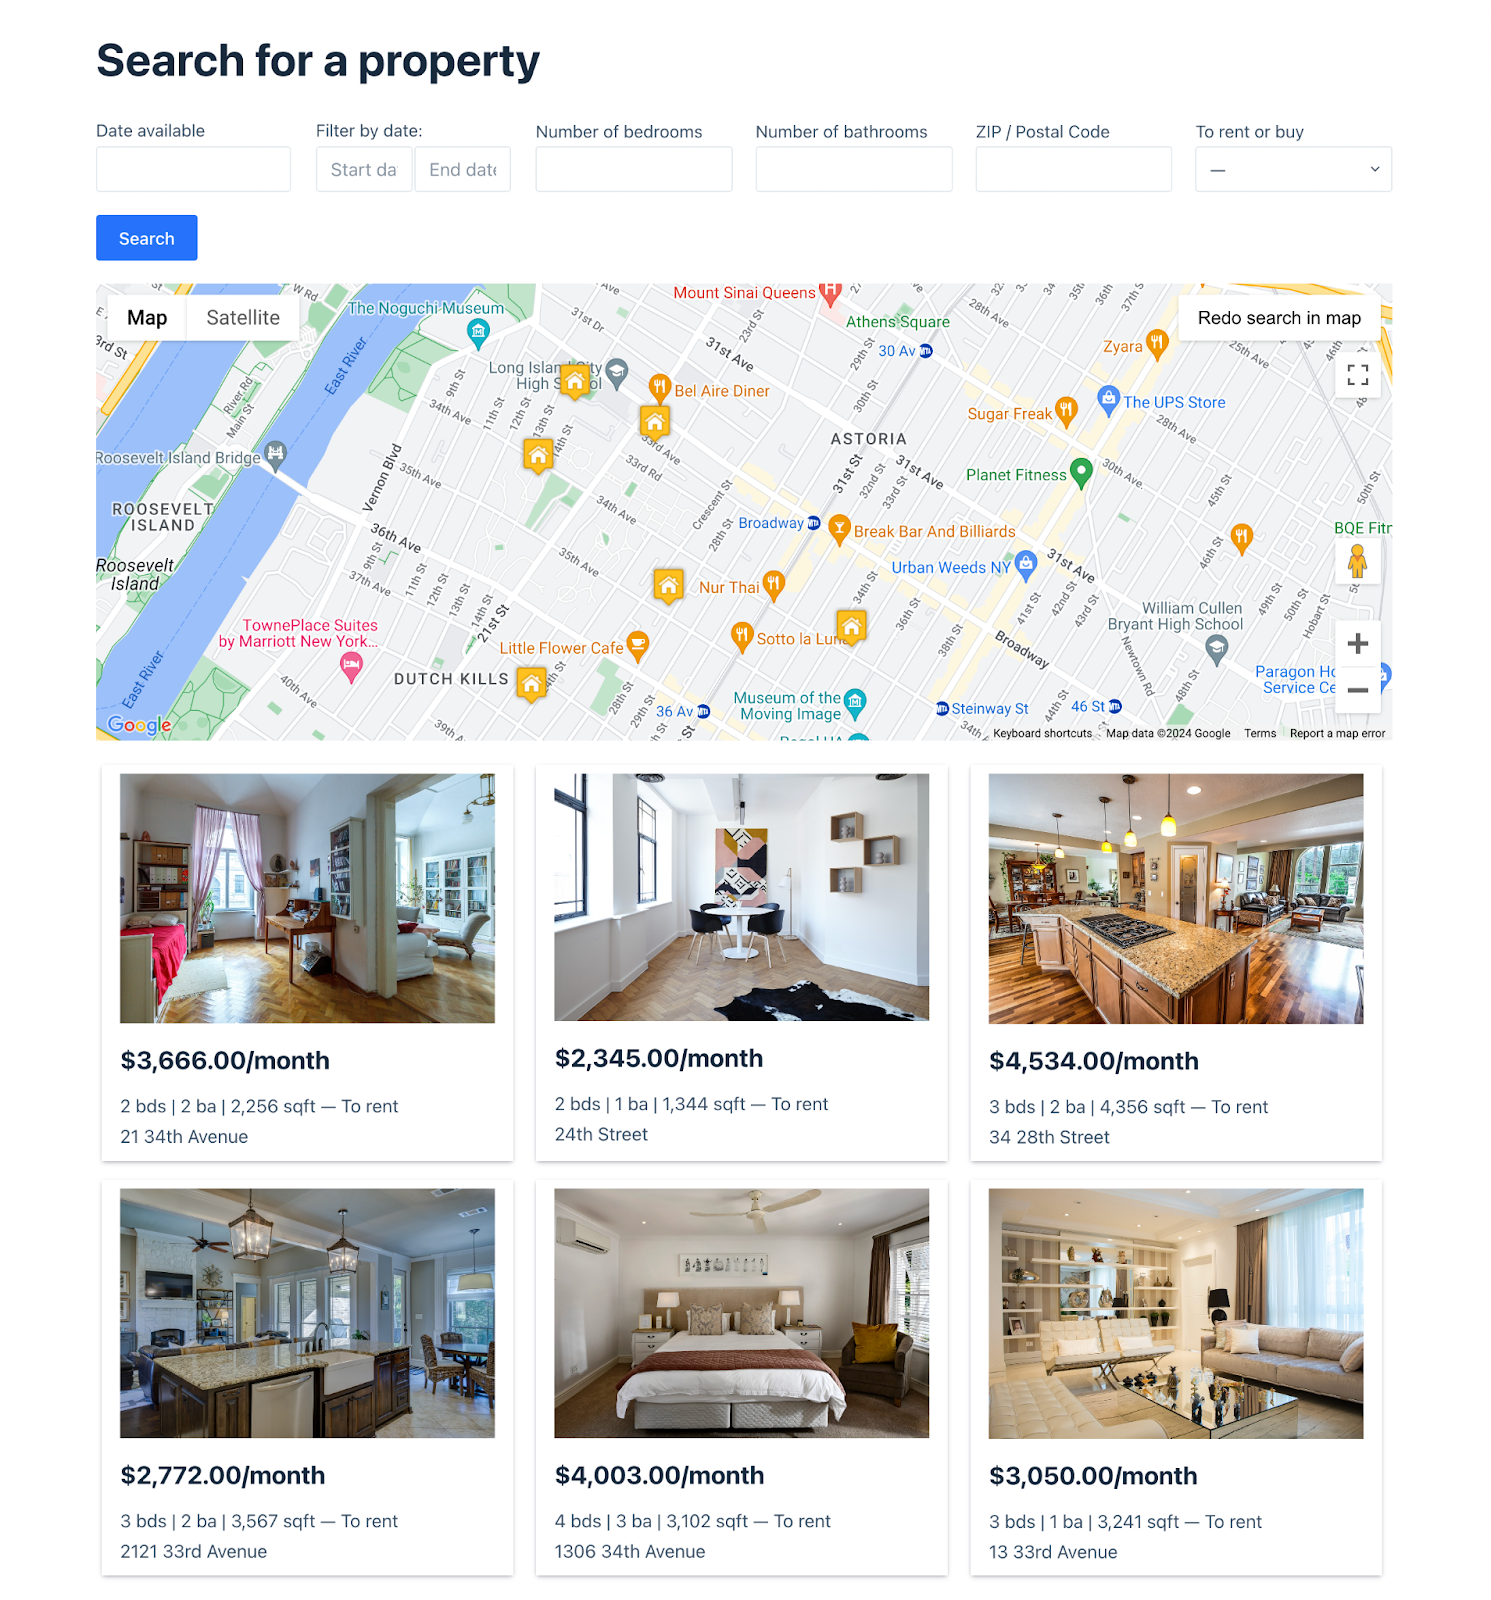 Каталог недвижимости, созданный с помощью GravityView.